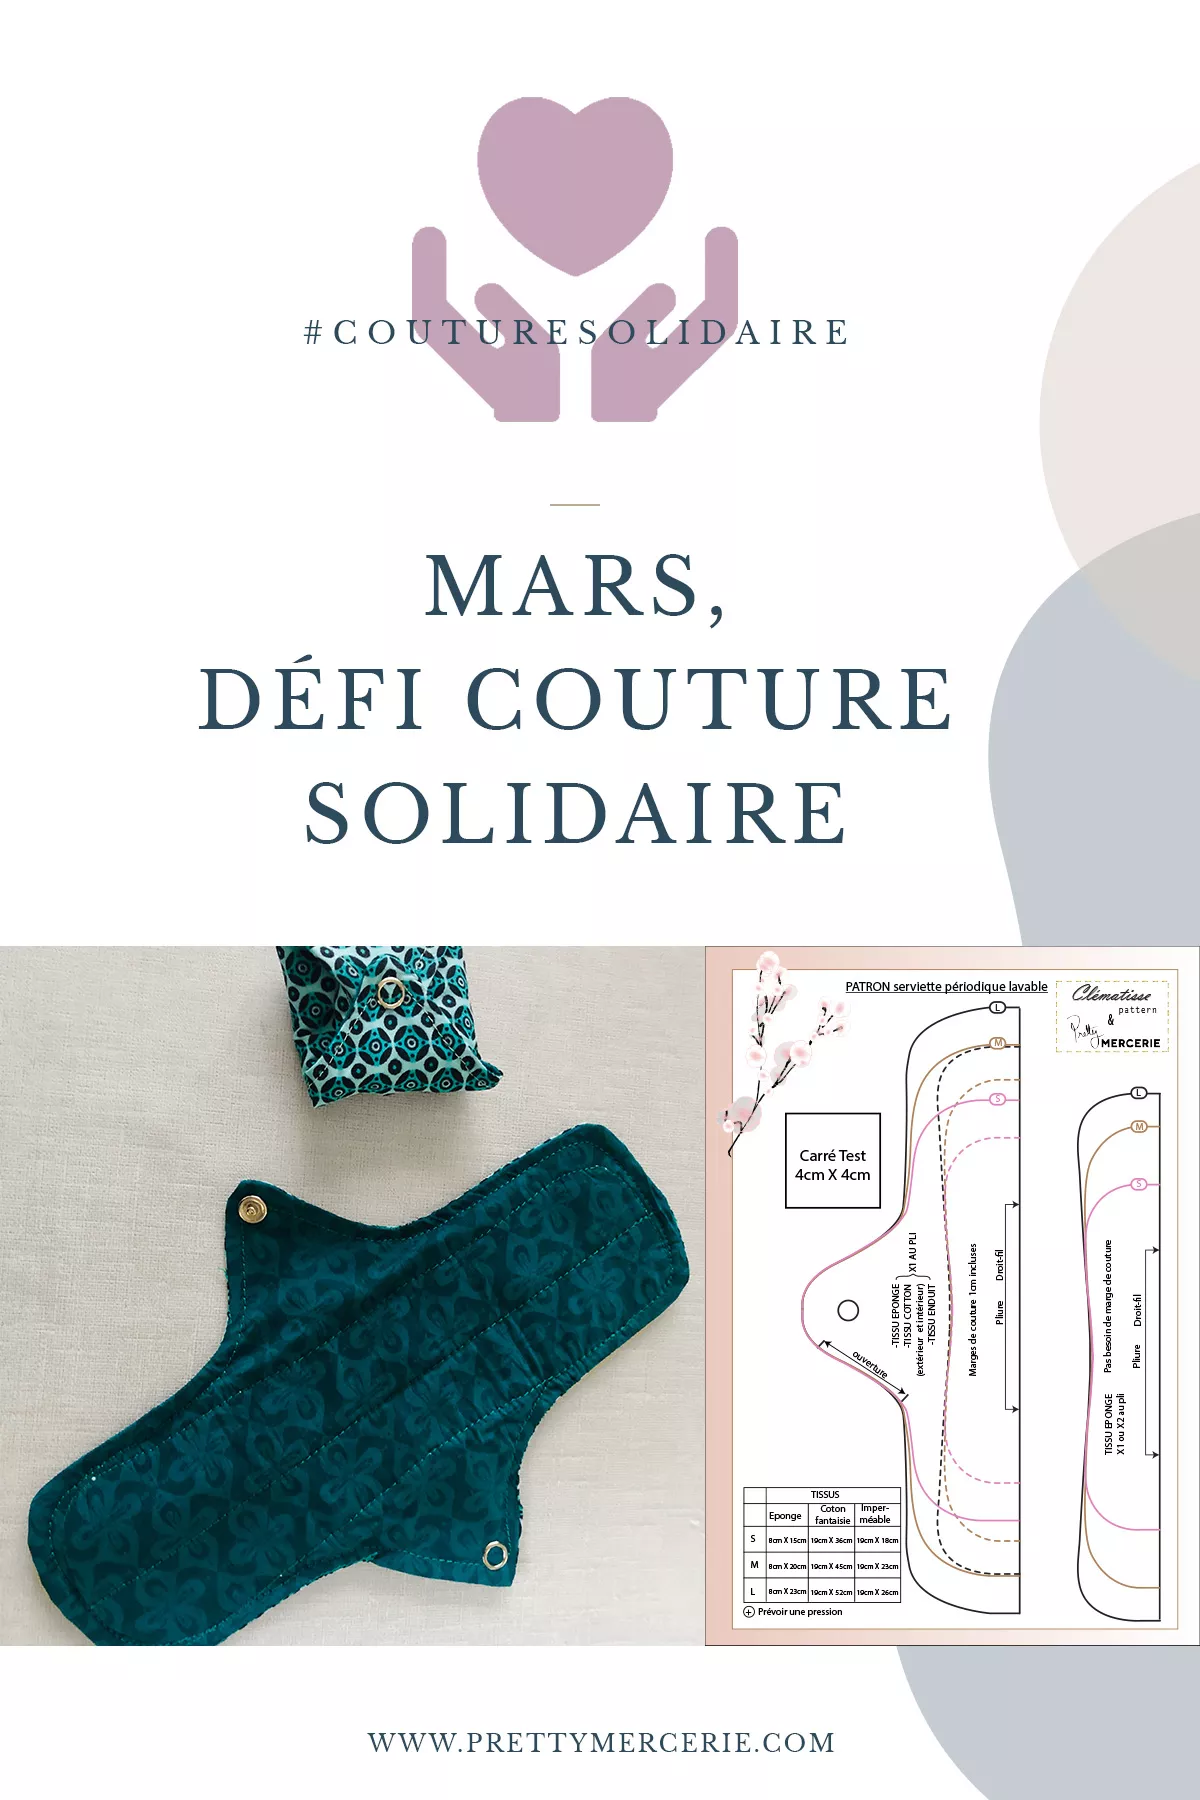 Venez participer à notre défi couture solidaire #couturesolidaire